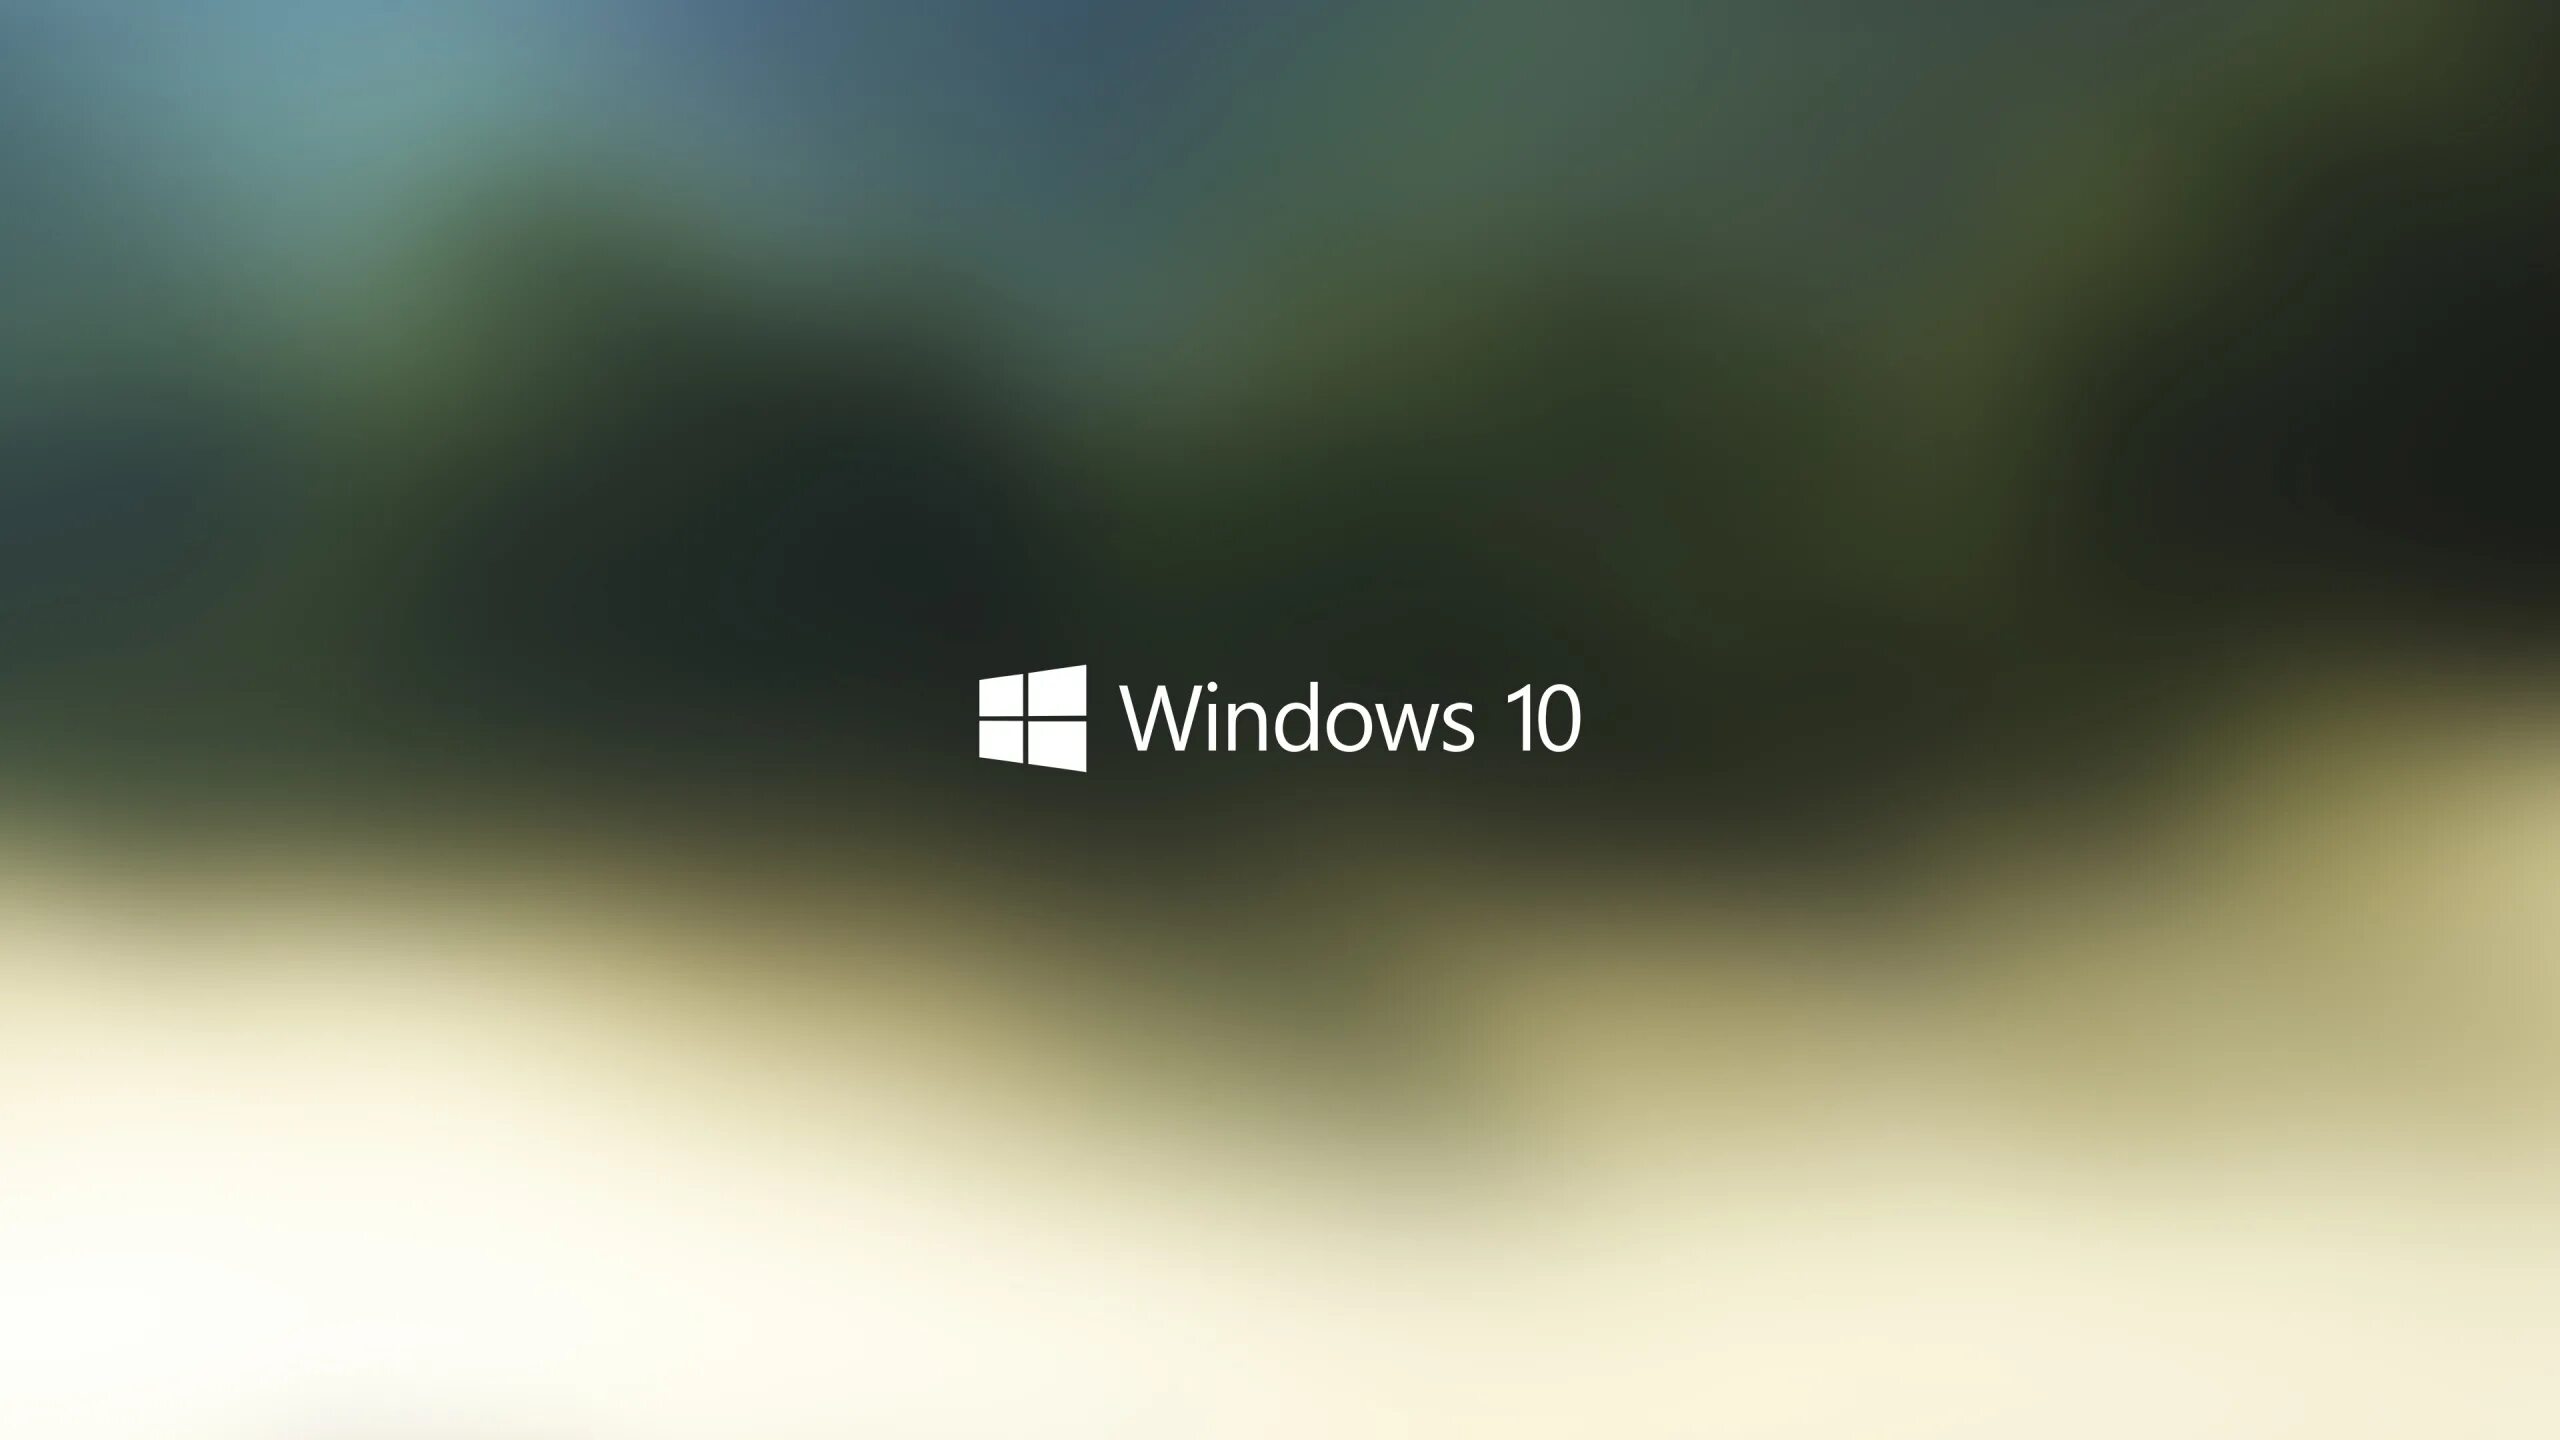 Best windows. Виндовс 10. Фон виндовс 10. Стильные обои для рабочего стола Windows 10. Windows 10 серый.